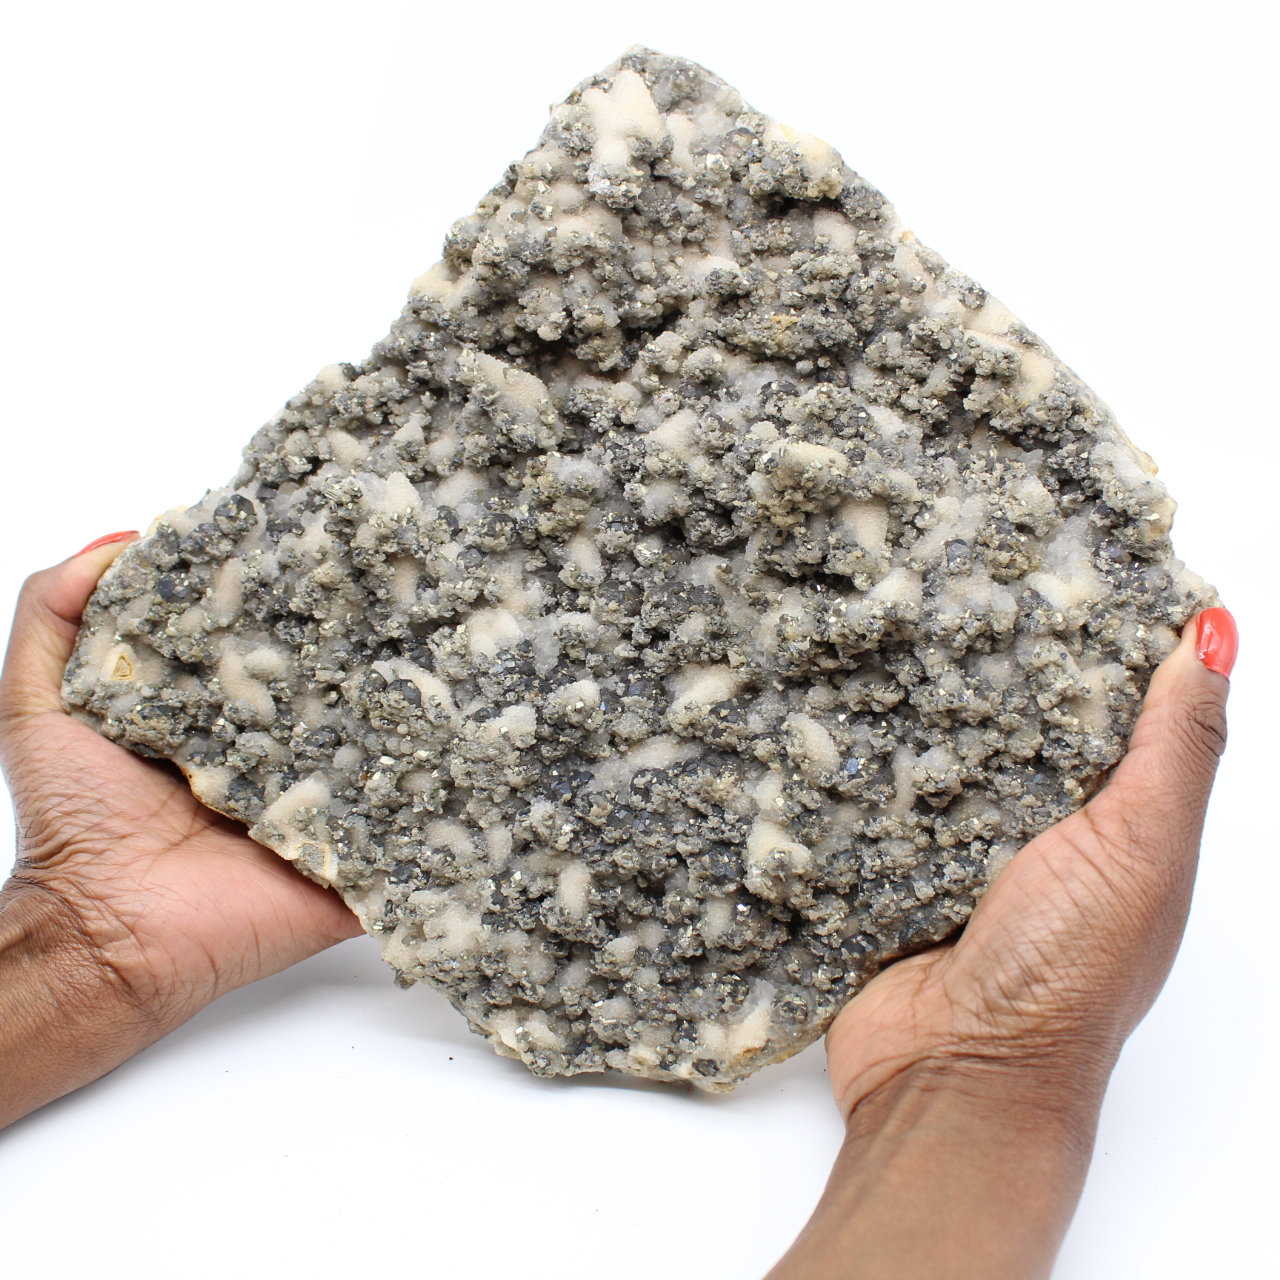 Grande plaque de quartz avec cristaux de pyrite et sphalérite (blende)